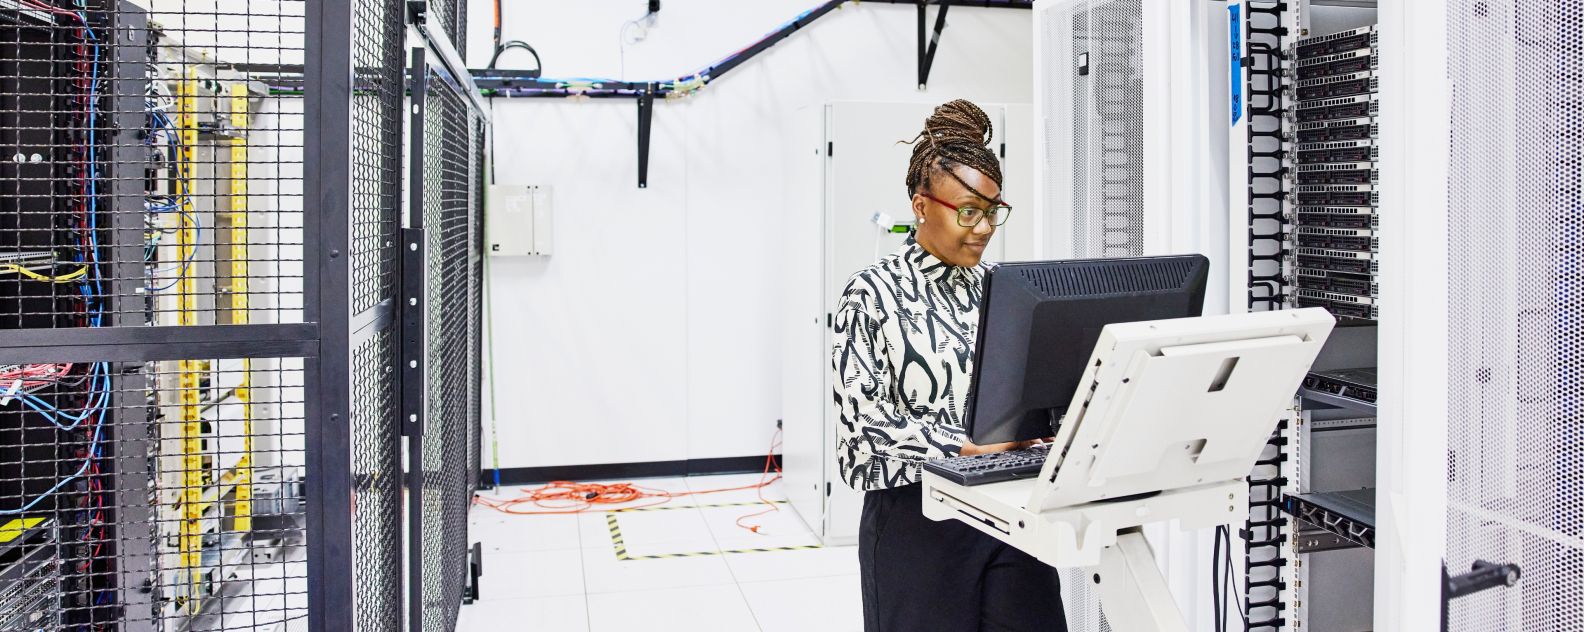 データセンターでサーバーの構成に取り組む女性IT担当者を広角撮影した写真。